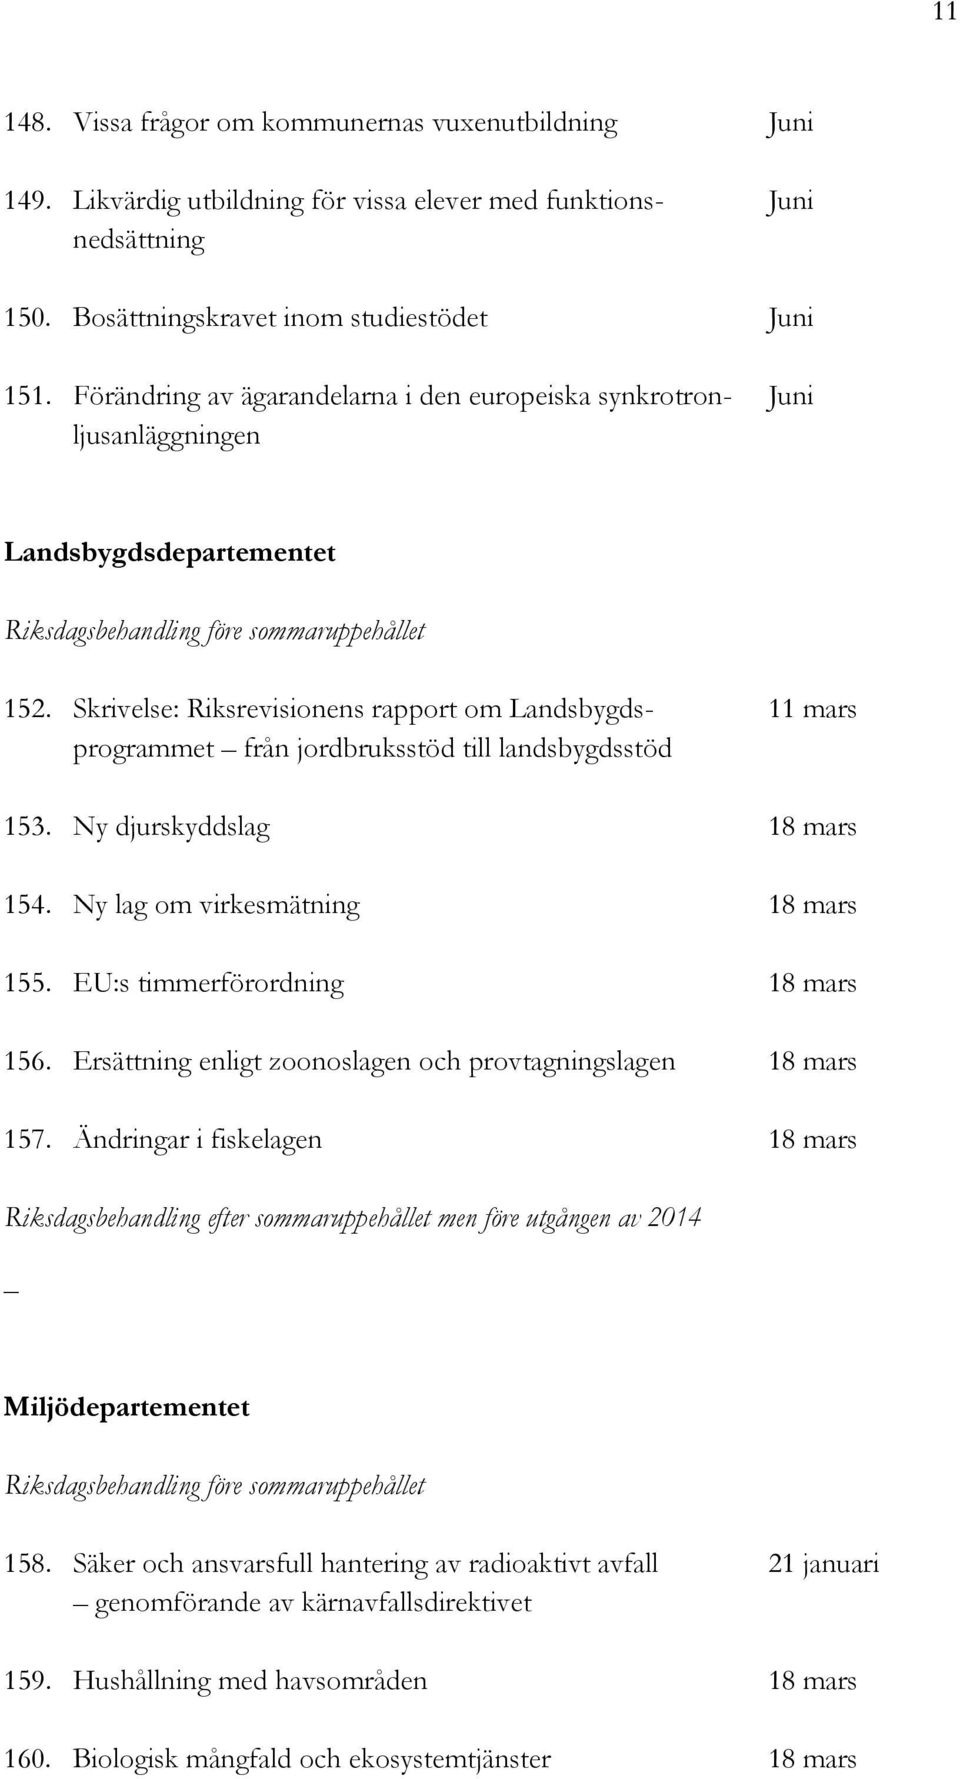 Skrivelse: Riksrevisionens rapport om Landsbygds- 11 mars programmet från jordbruksstöd till landsbygdsstöd 153. Ny djurskyddslag 18 mars 154. Ny lag om virkesmätning 18 mars 155.